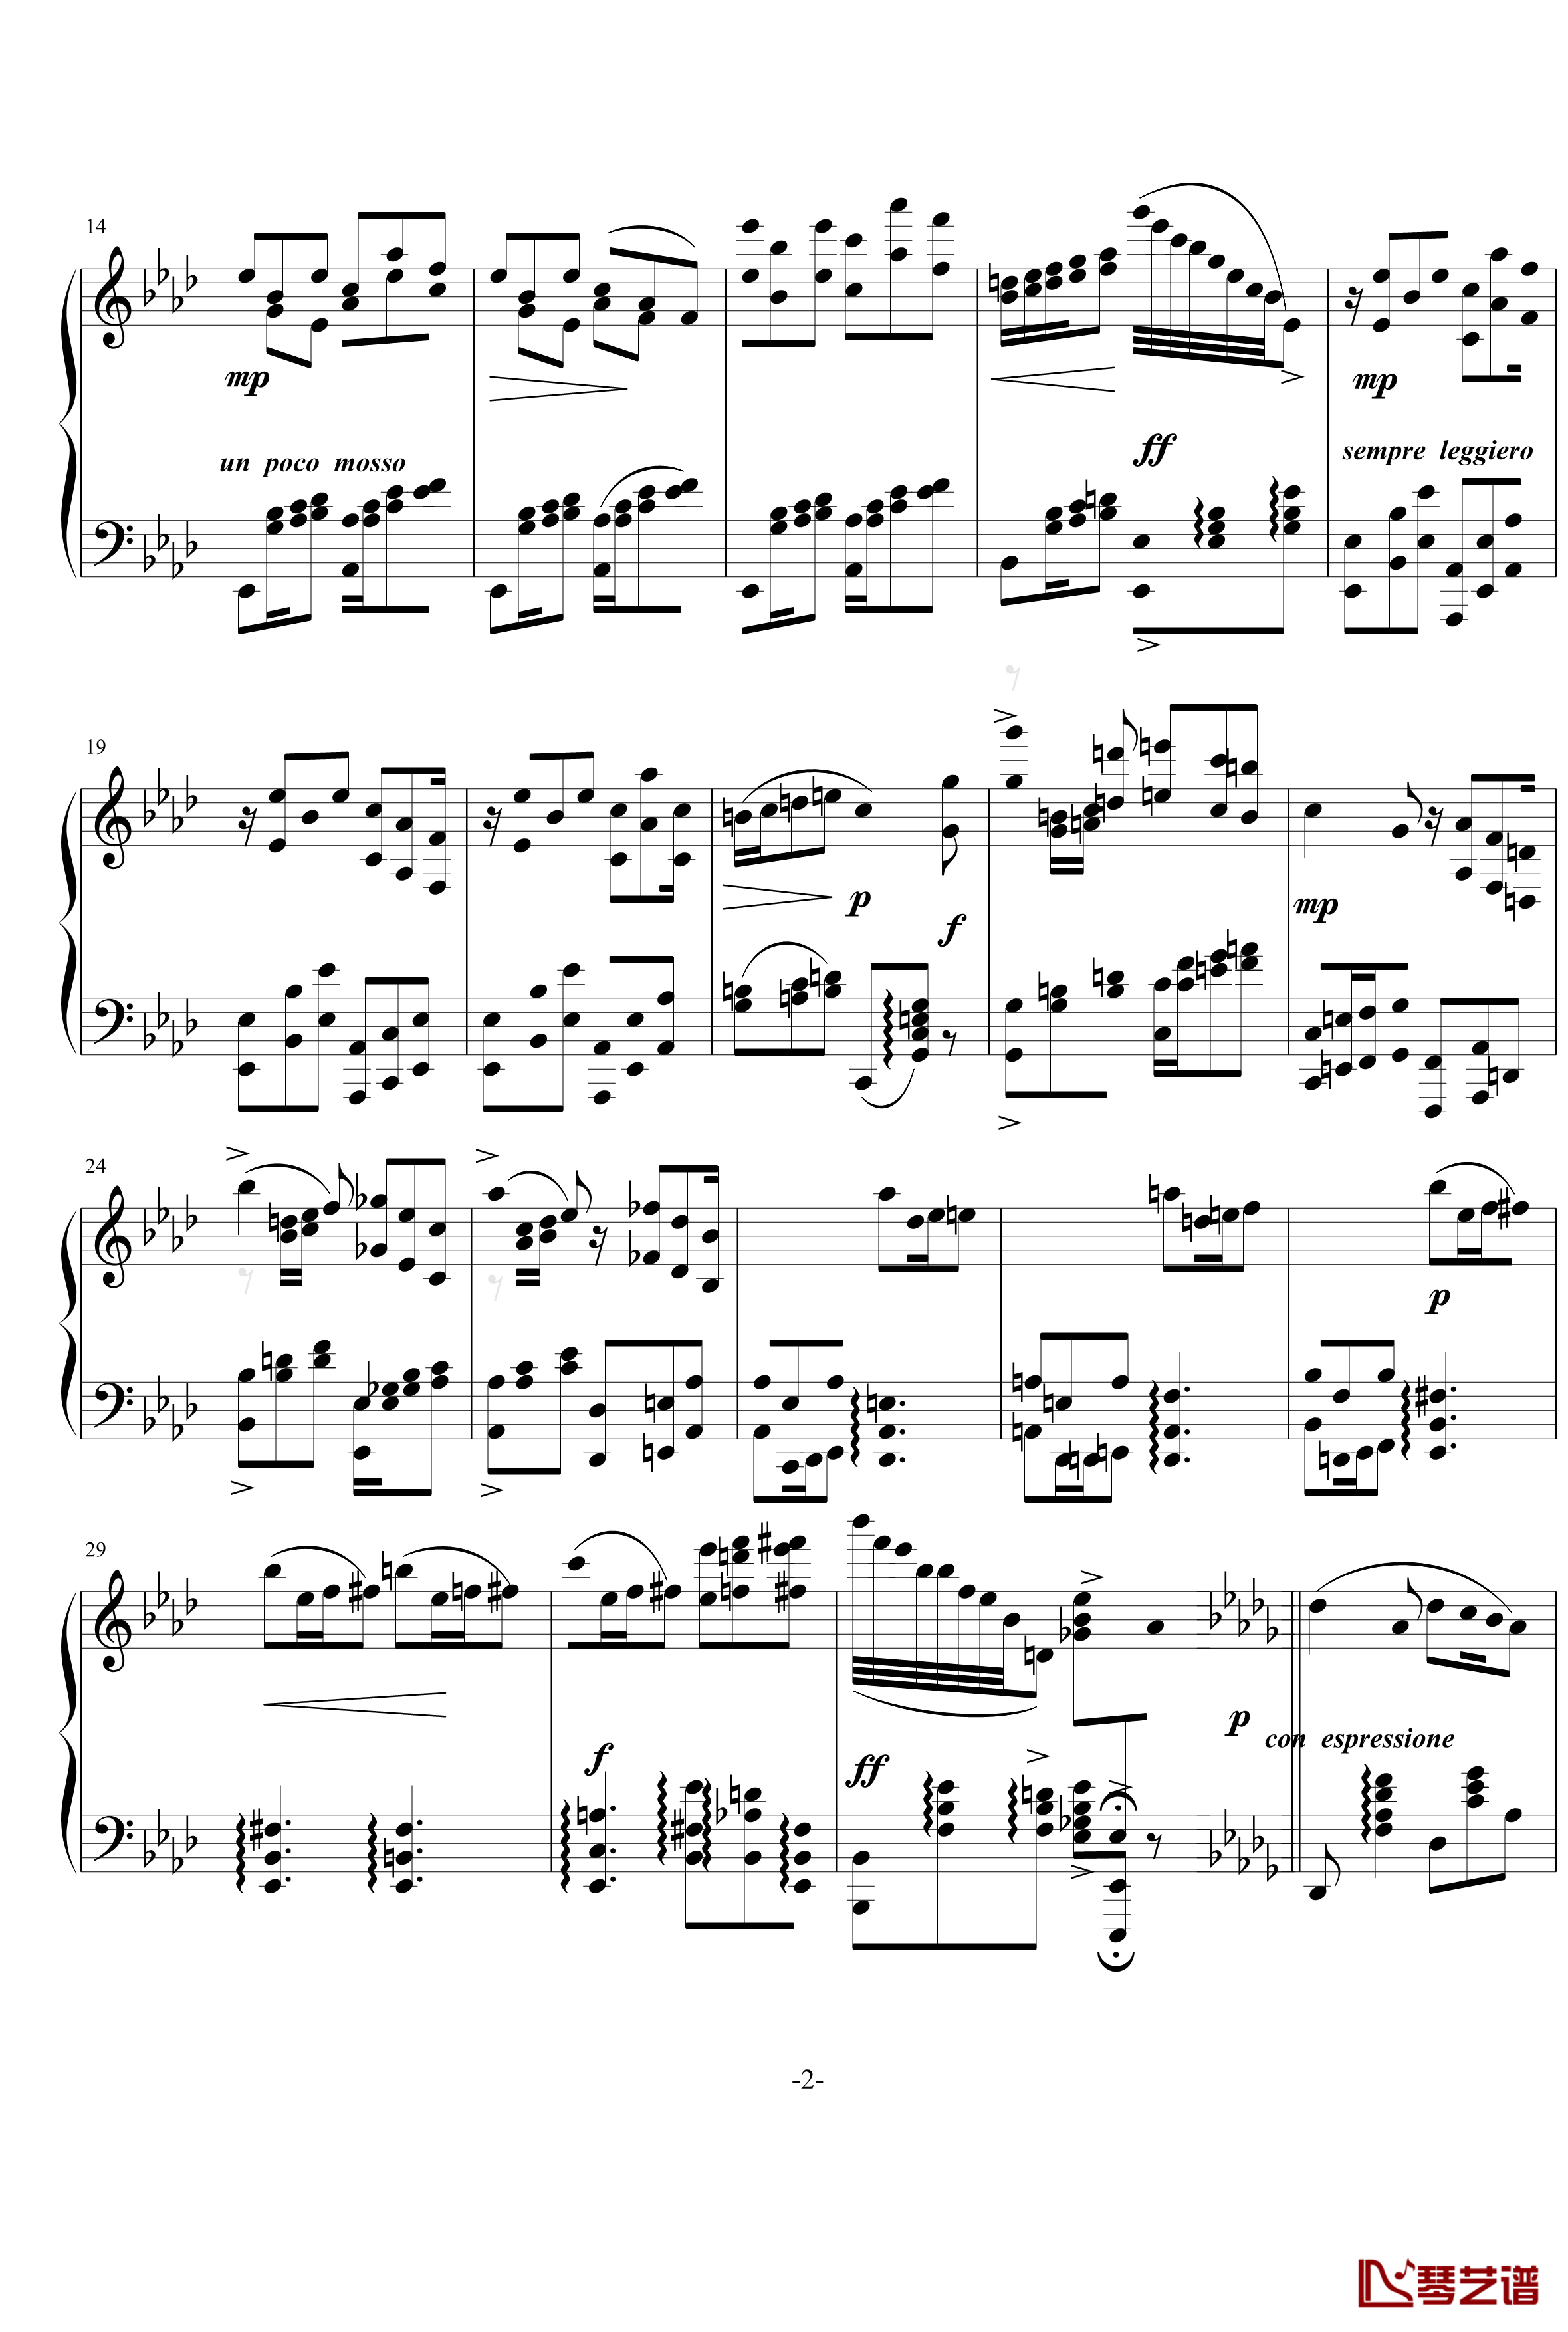 小步舞曲钢琴谱-烂大俗奏鸣曲2乐章-nyride2